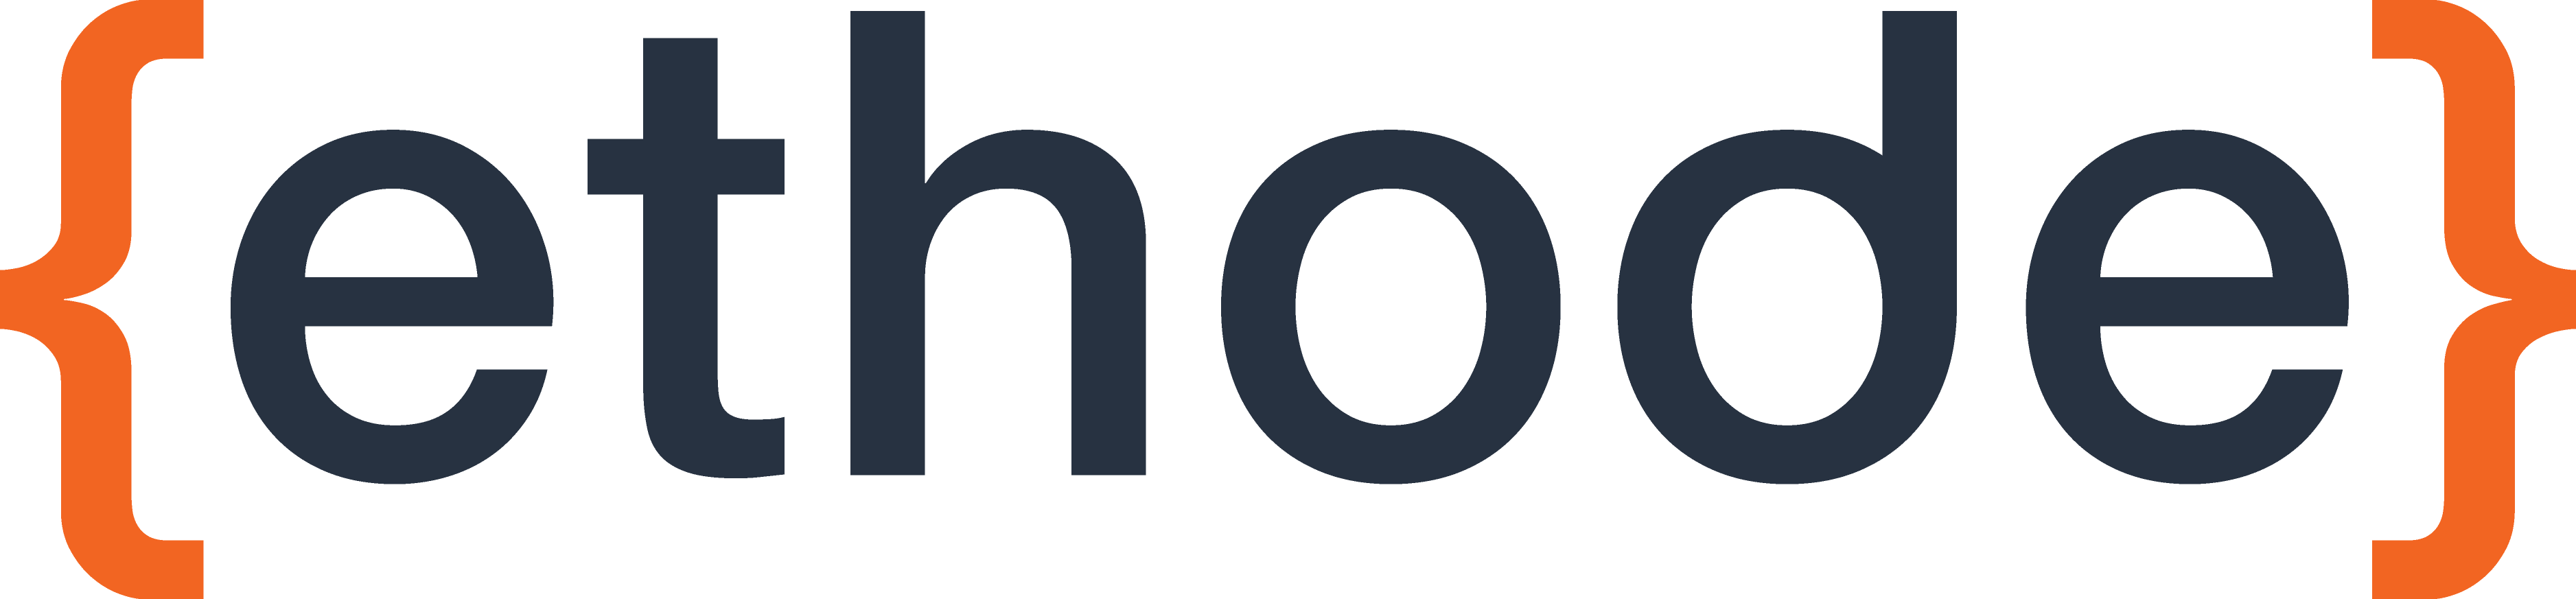 ethode logo